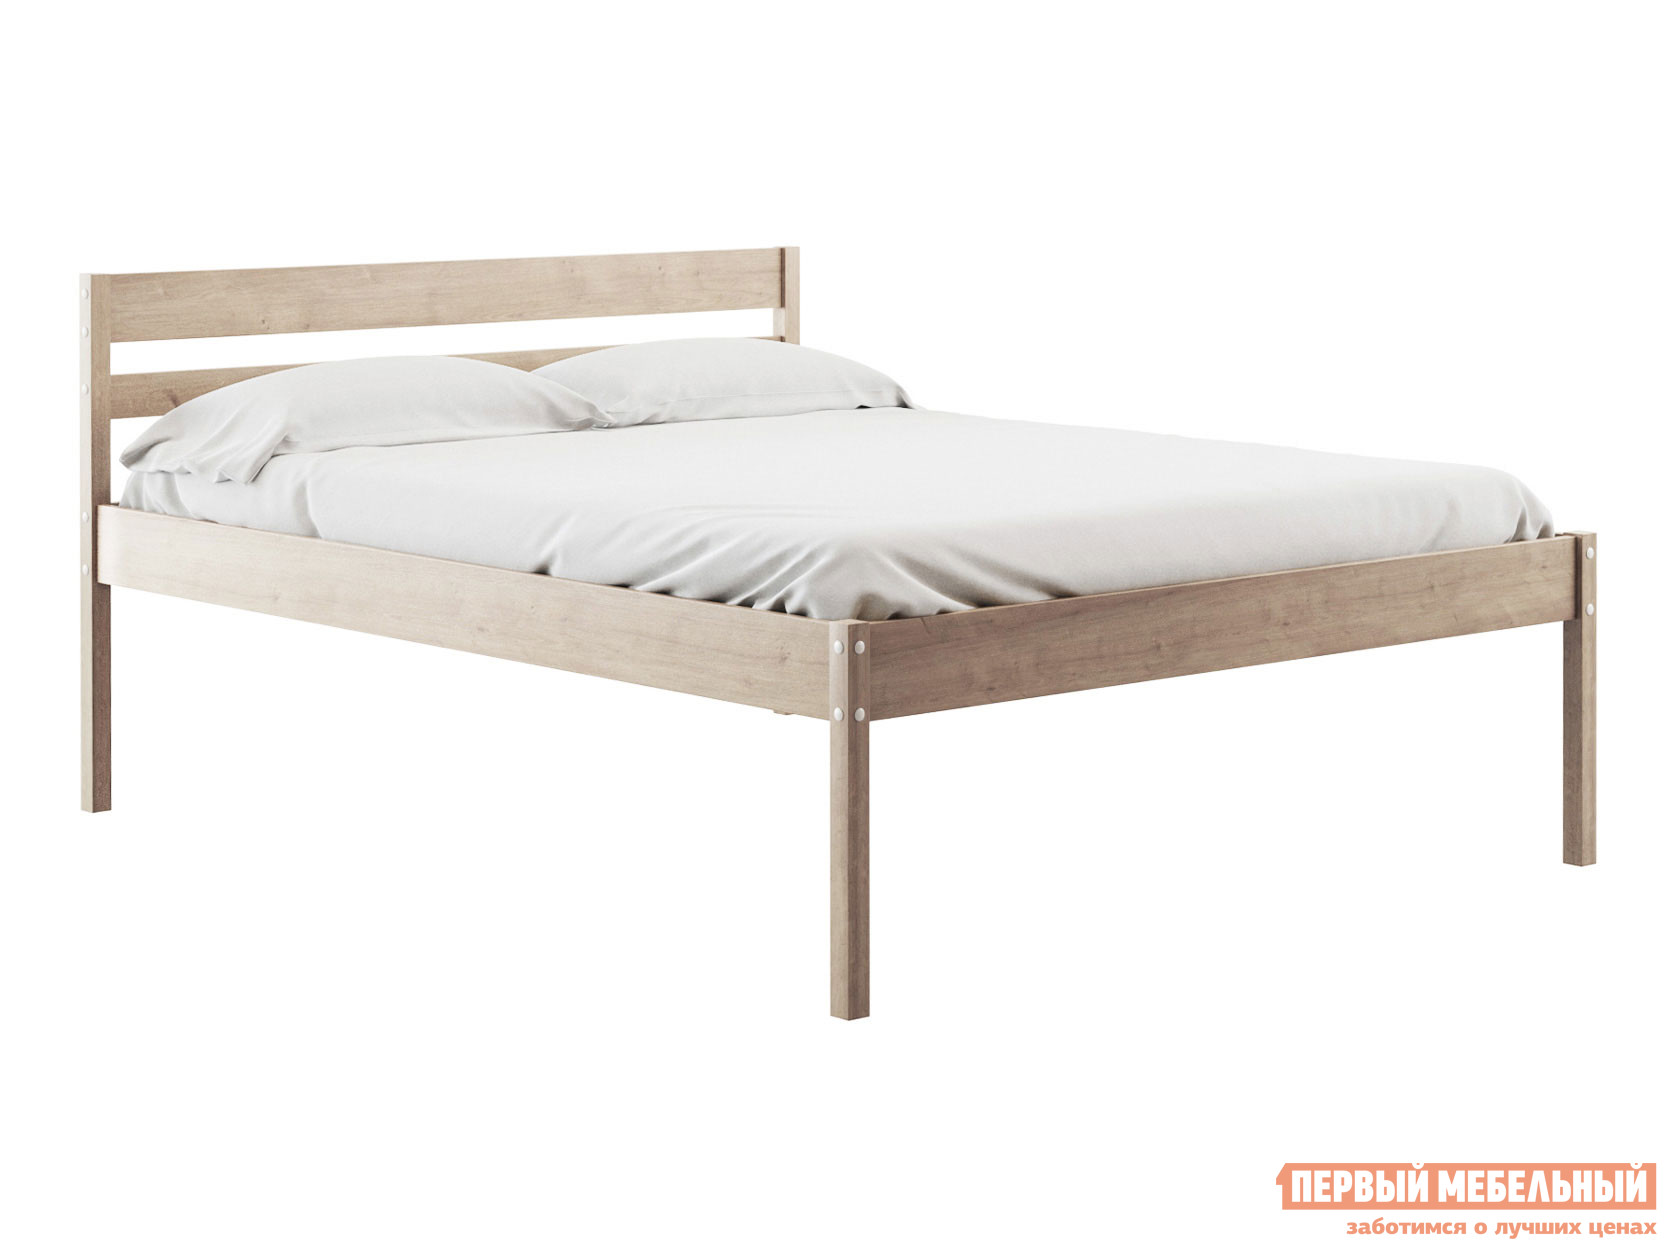 Двуспальная кровать  Эко массив березы Натуральный, 160х200 см, 41 см